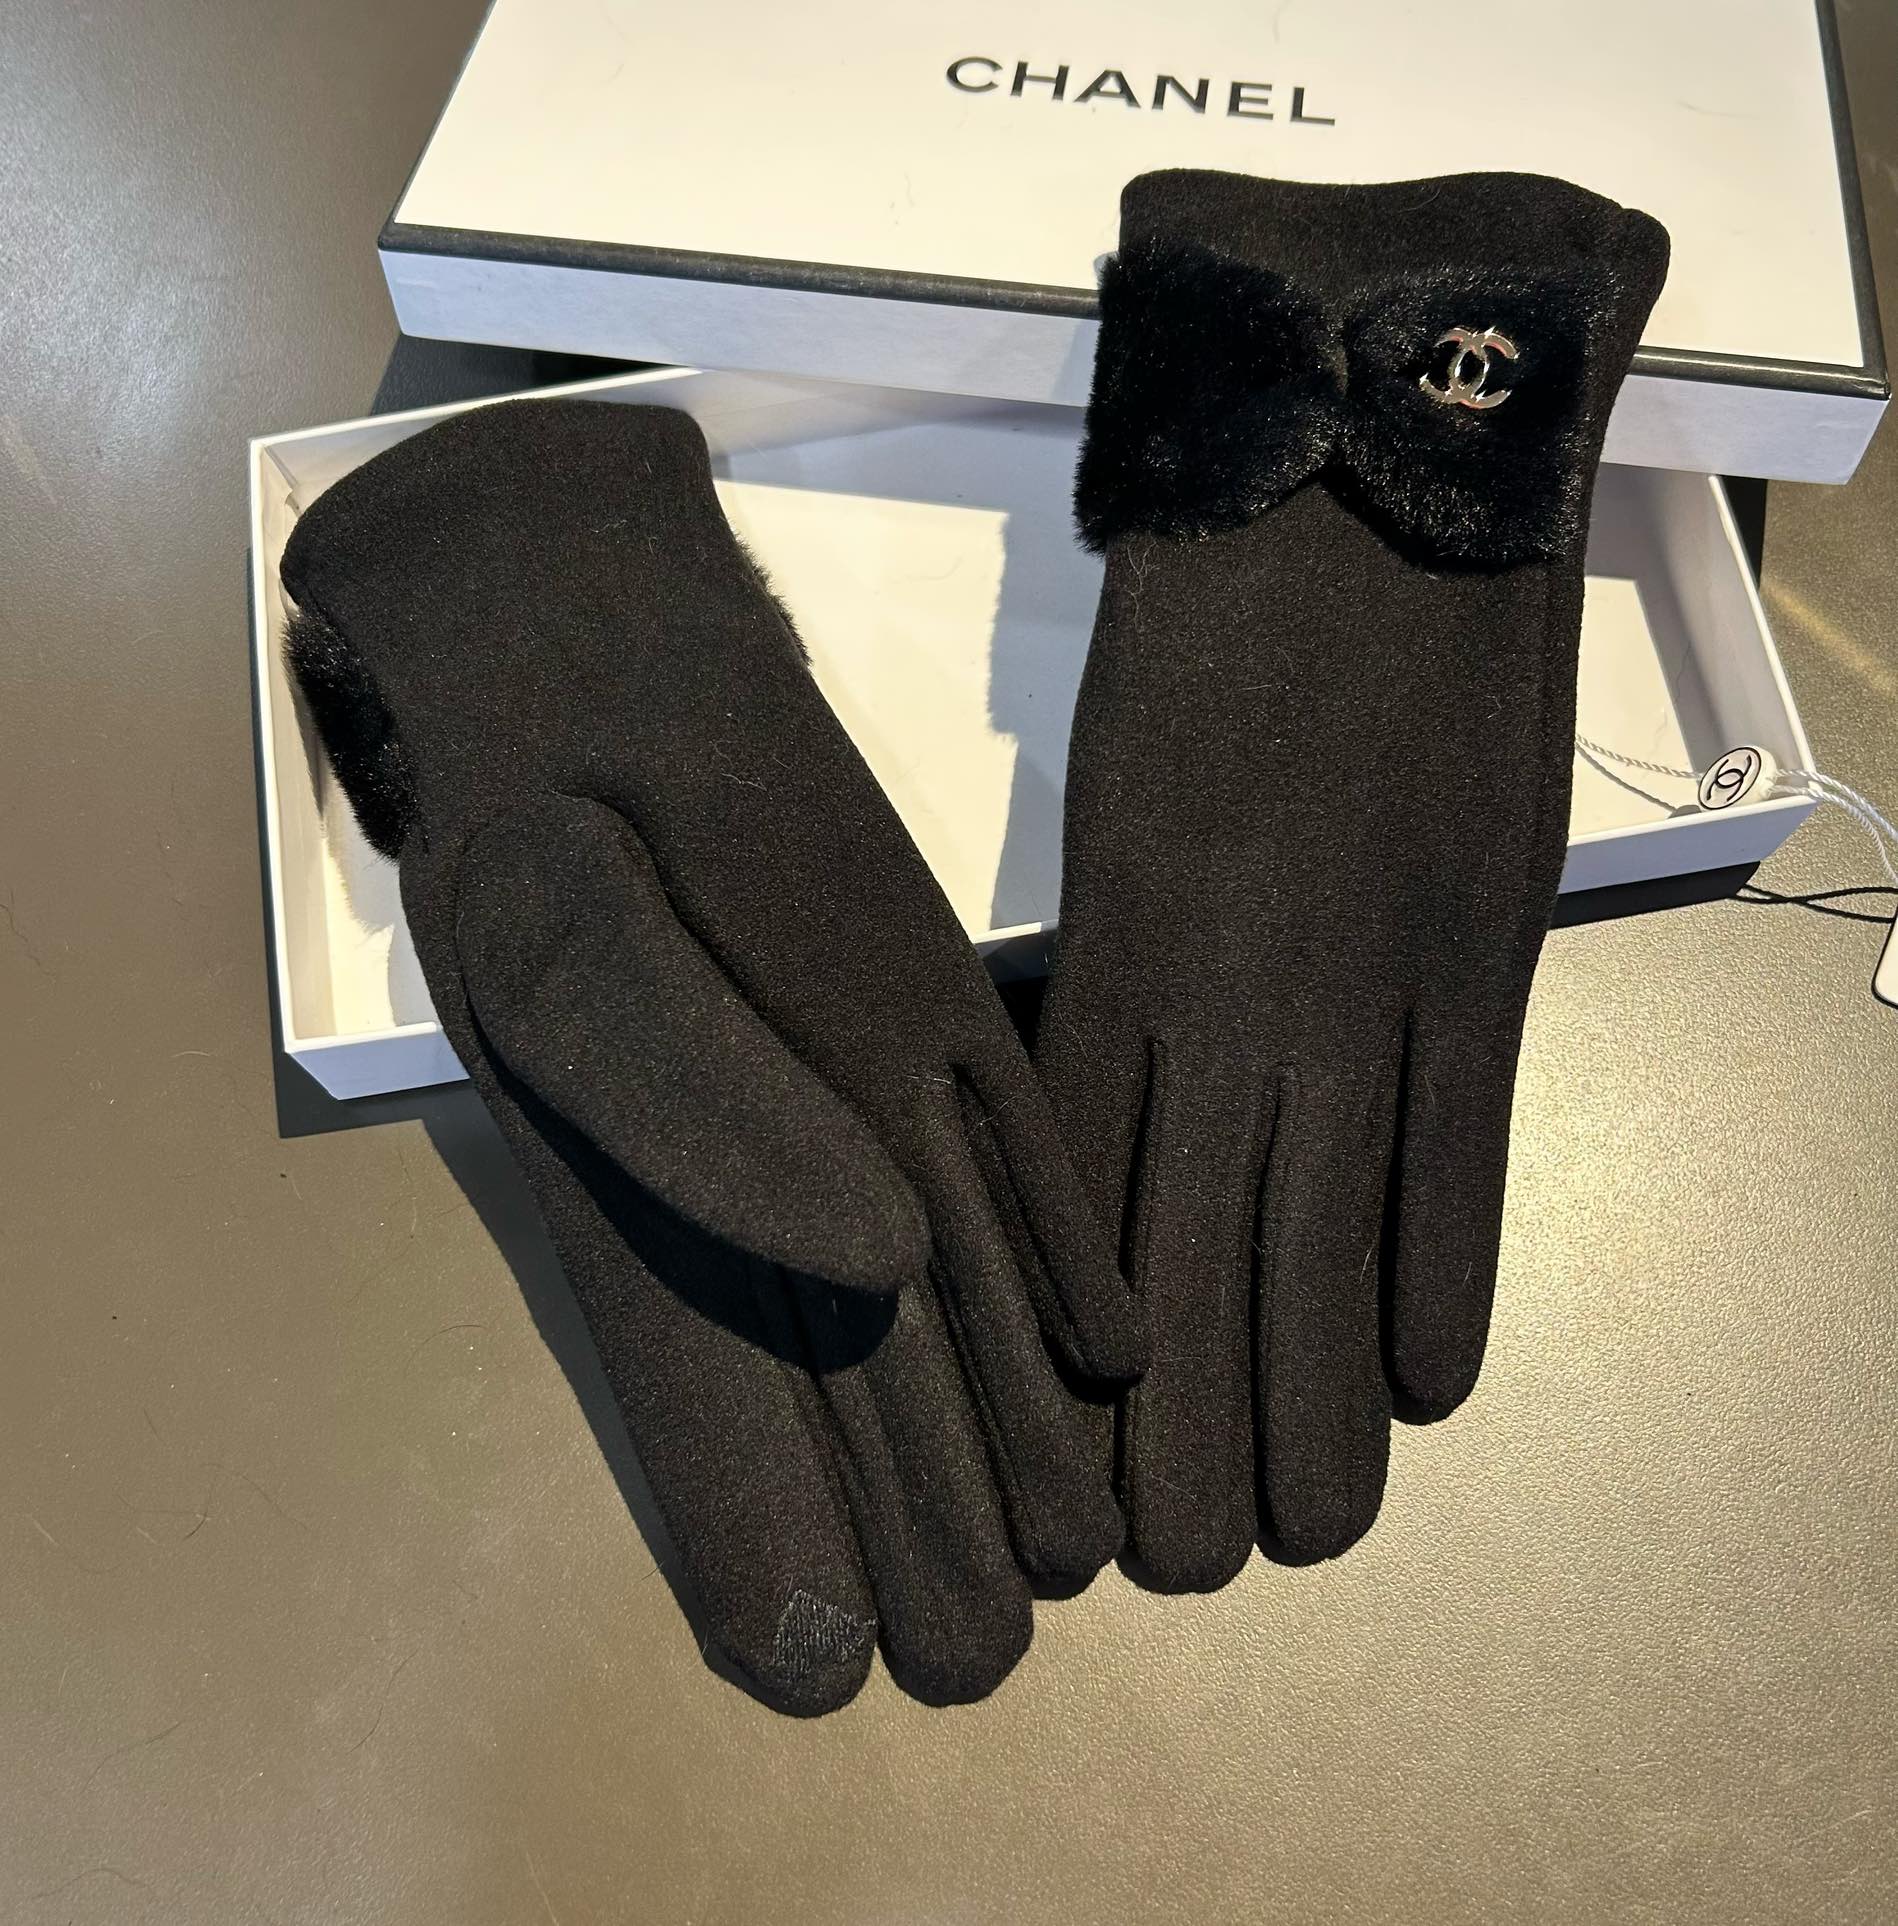 ️新款Chanel香奈儿专柜新品羊毛手套时尚手套秋冬保暖加绒内里上手超舒适柔软百搭！配盒子均码